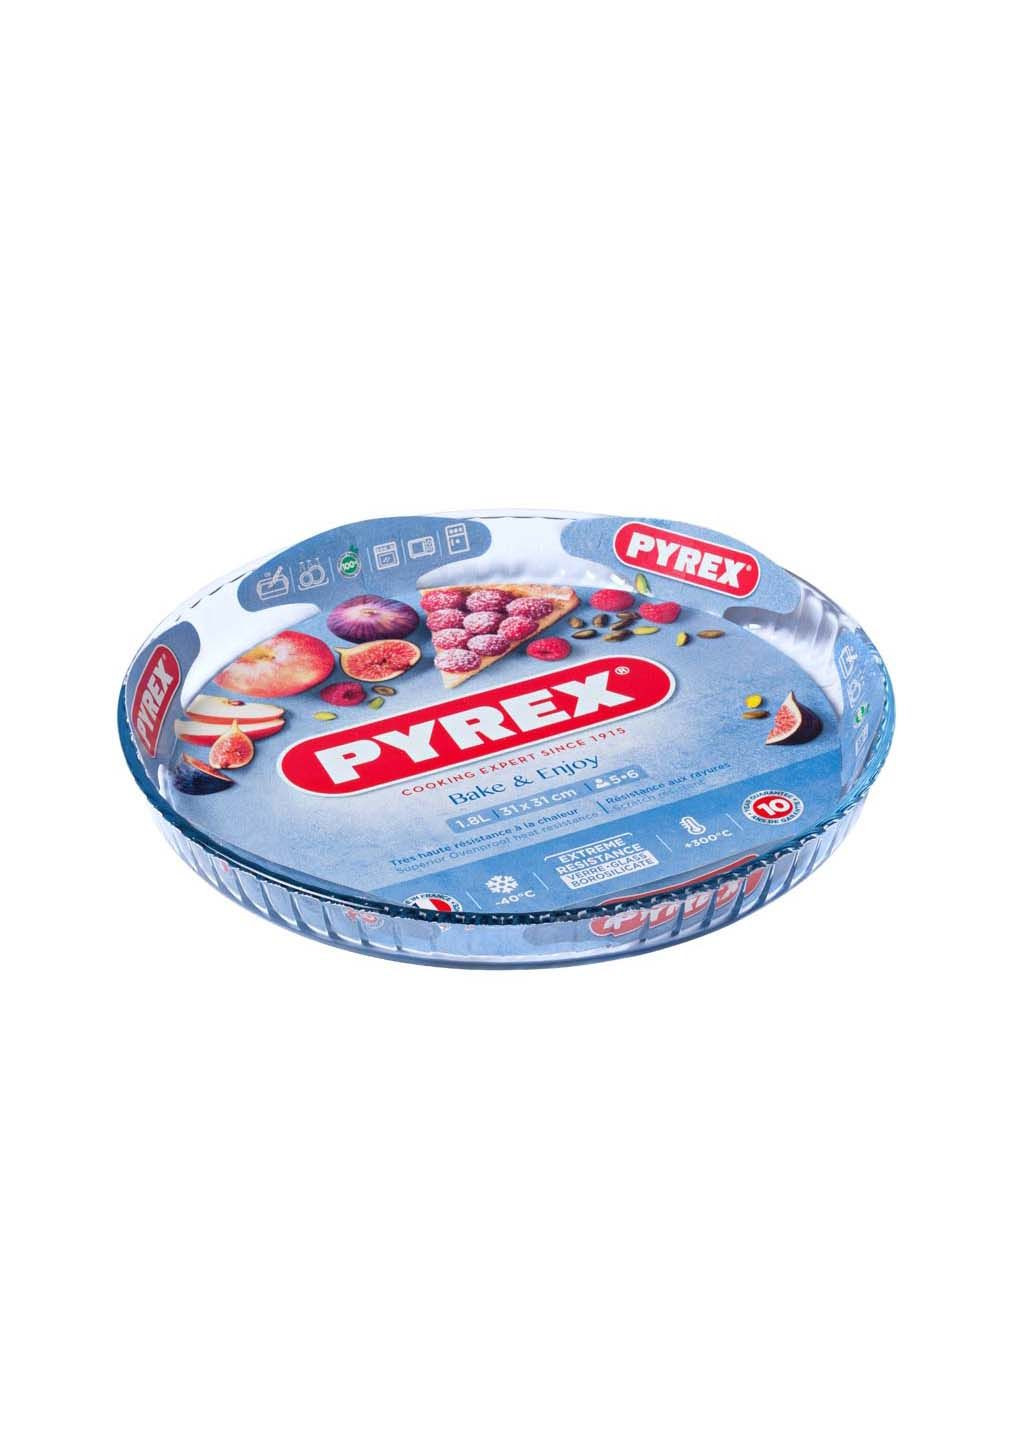 Форма BAKE&ENJOY 30 см Pyrex (278230286)